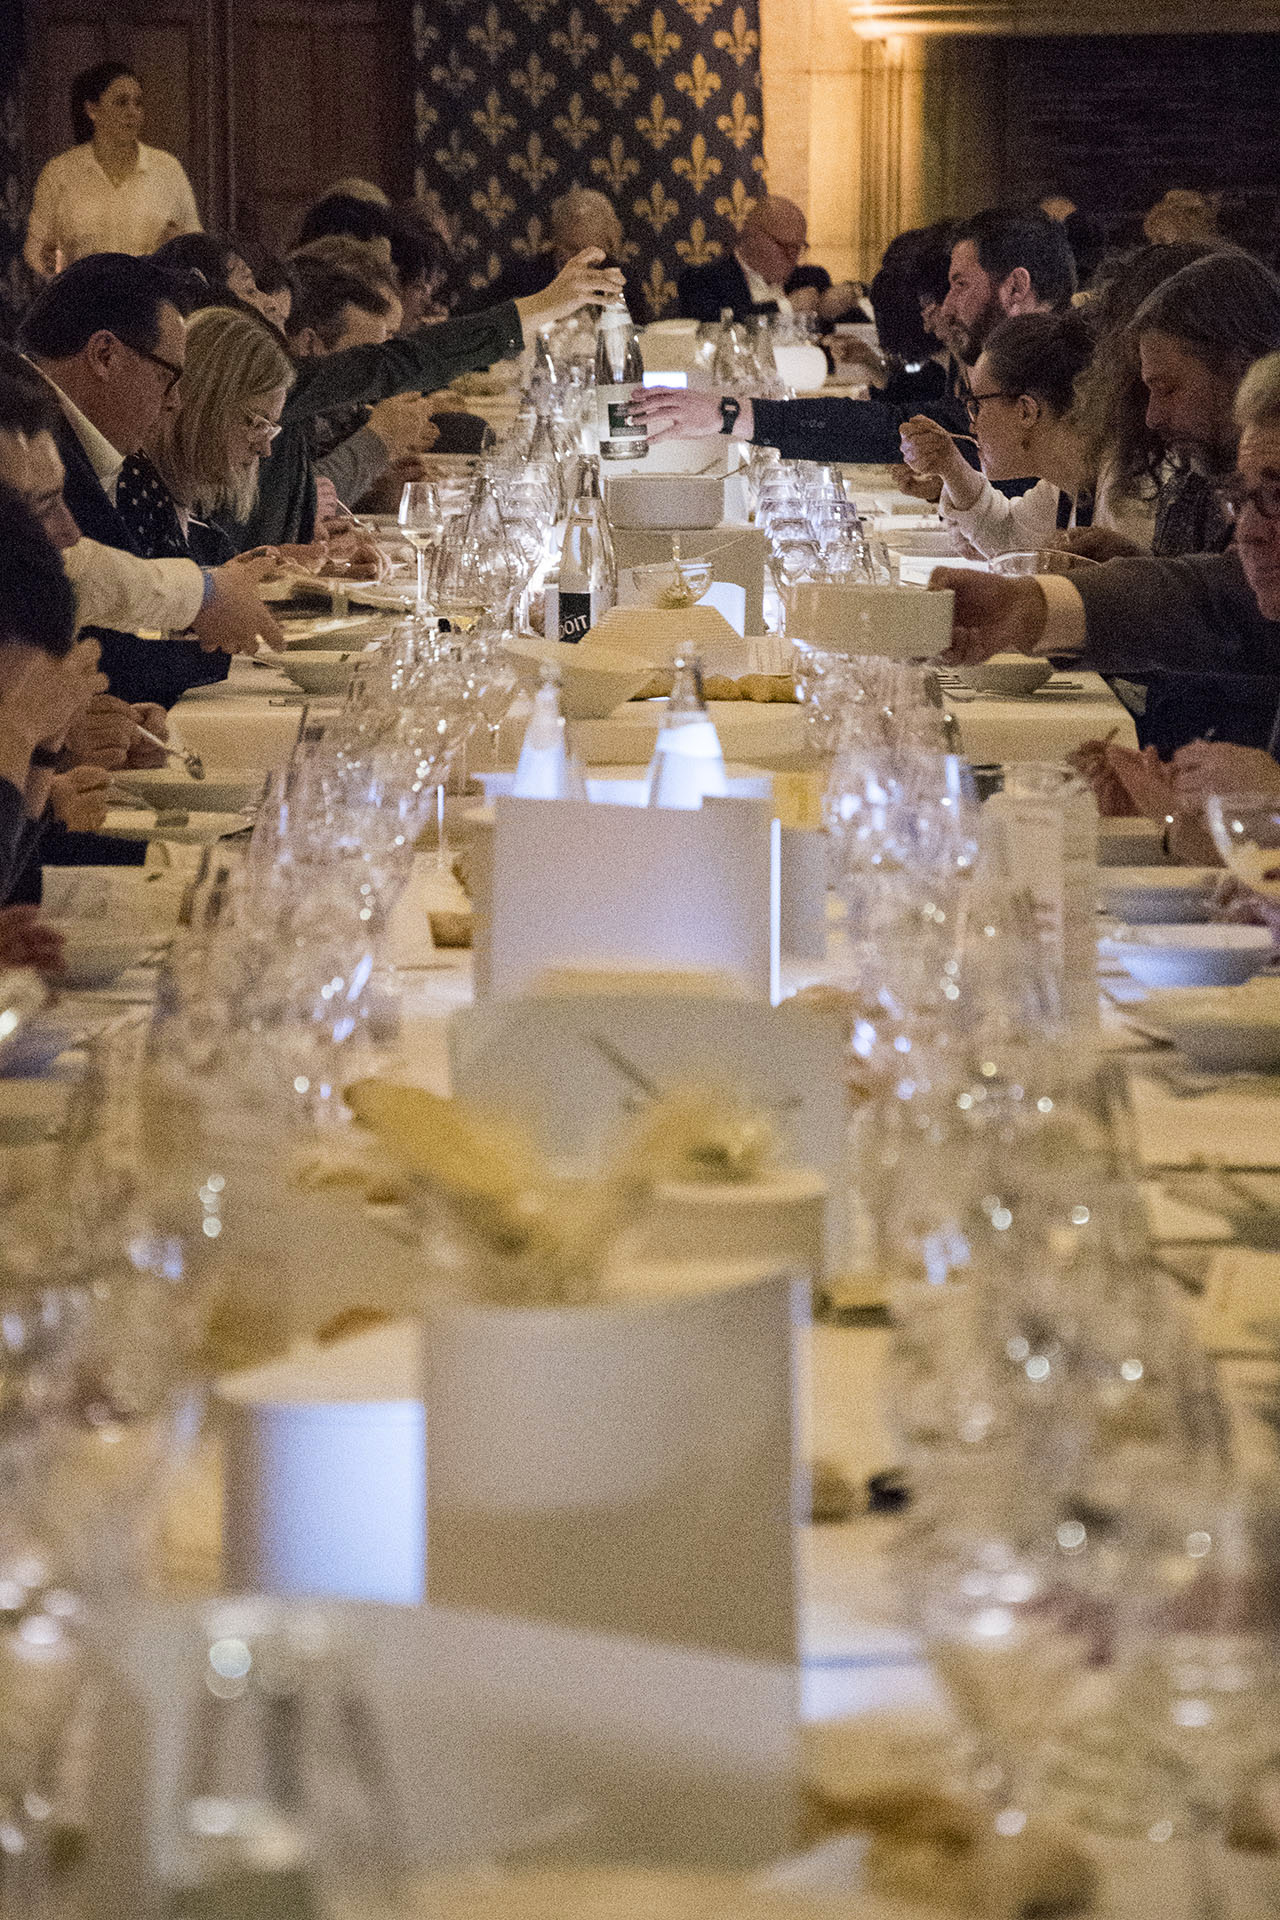 aire_food_banquet_scientifique_gastronomie_diplomatie_table_glasses